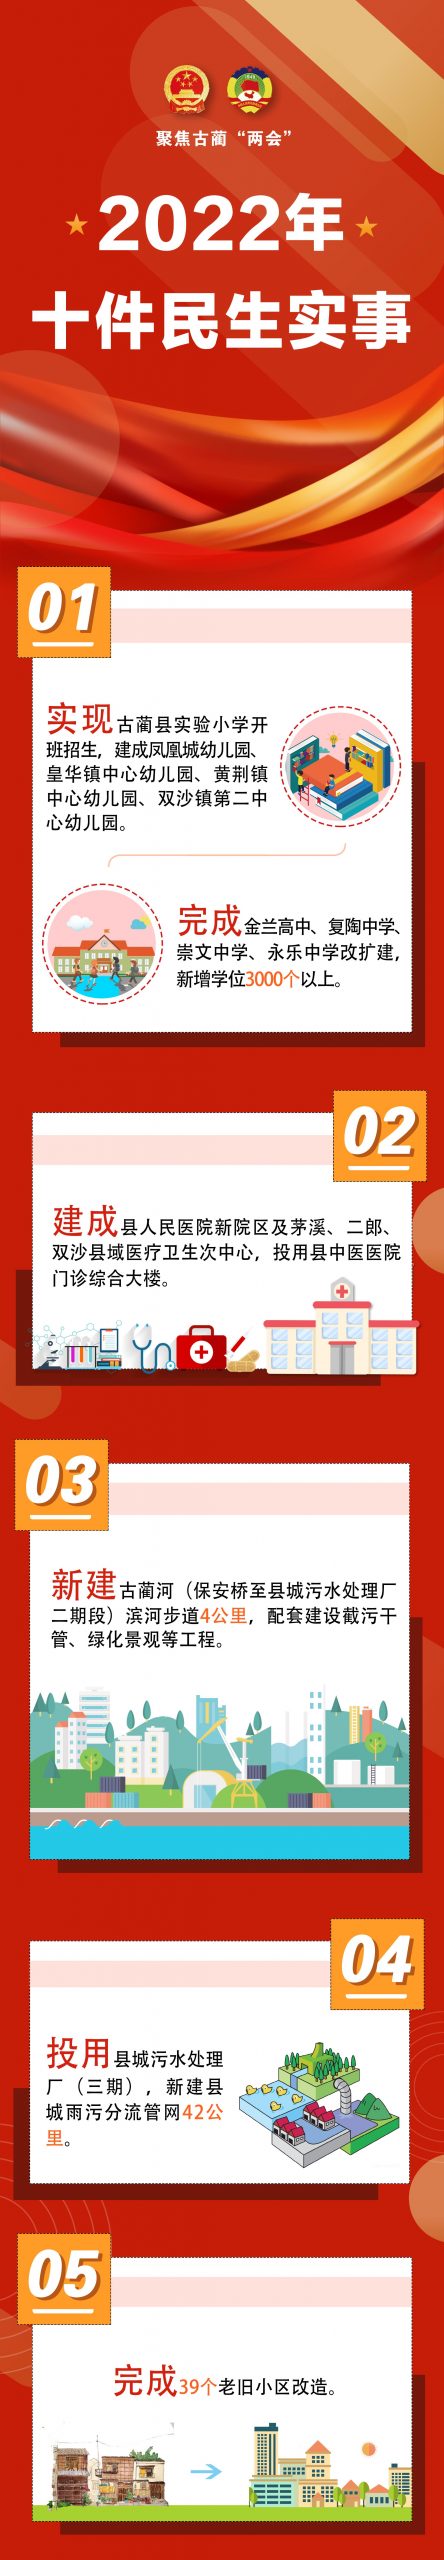 古蔺县2022年10件民生实事出炉插图